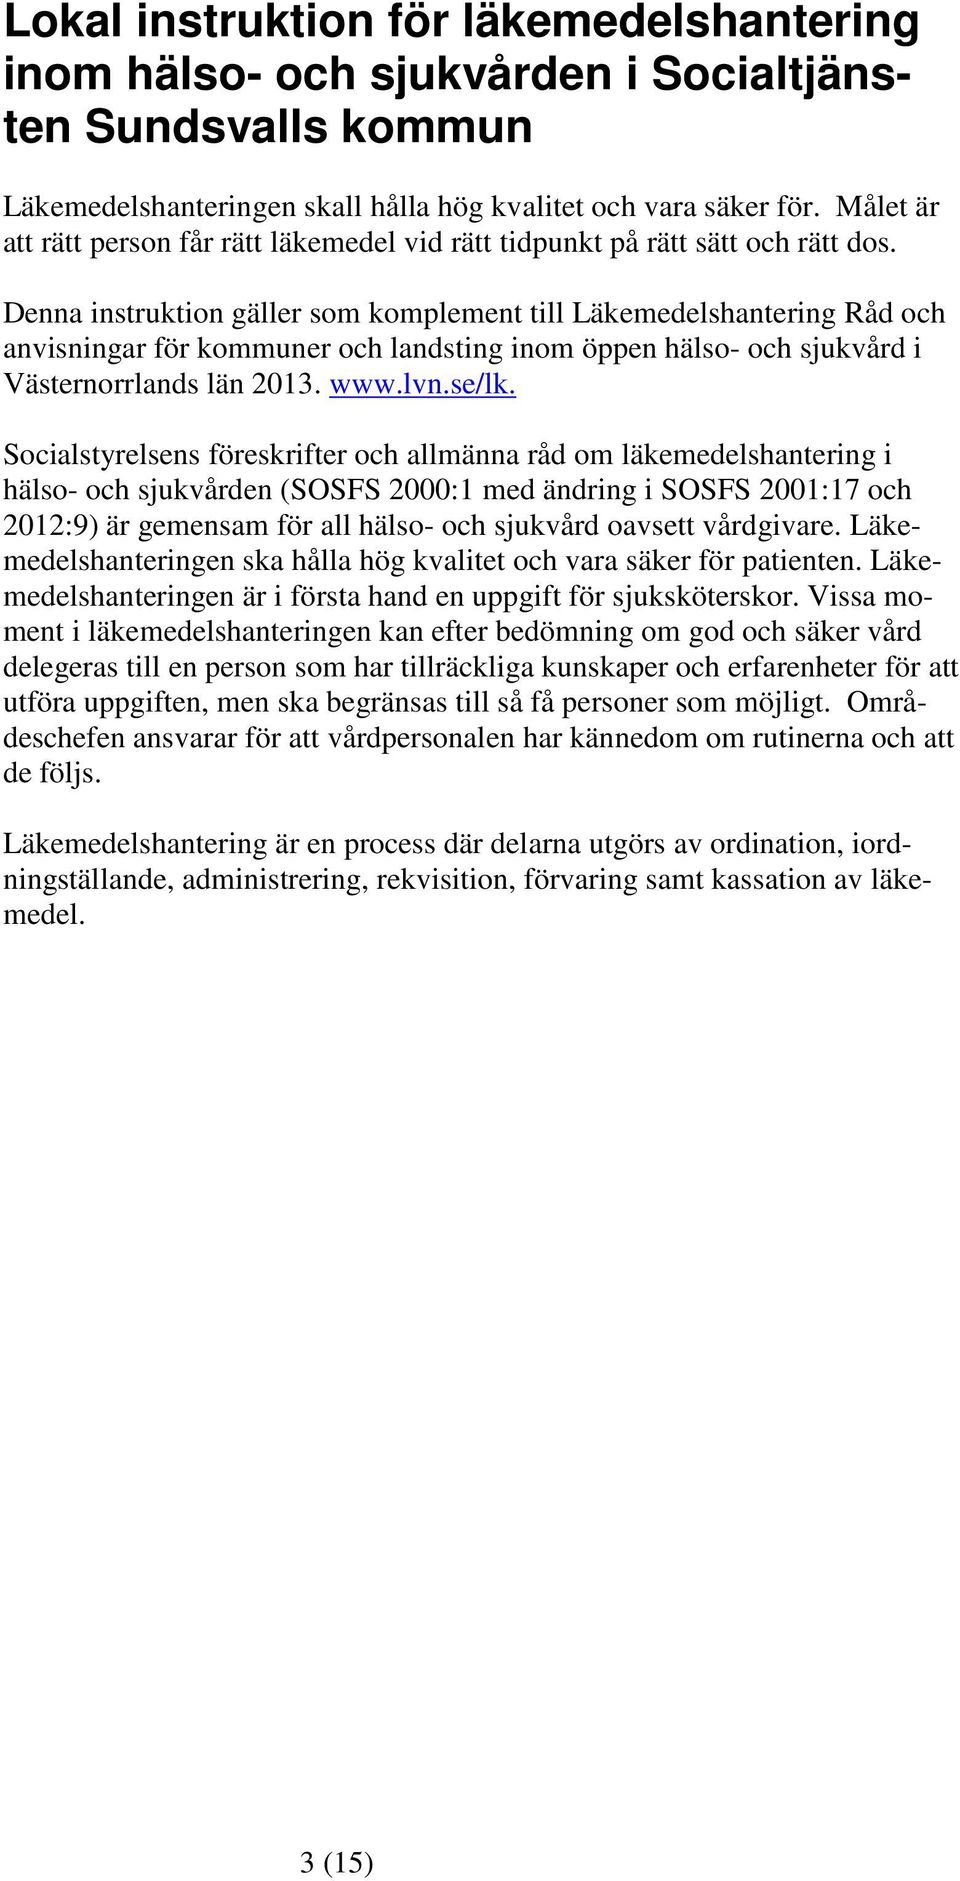 Denna instruktion gäller som komplement till Läkemedelshantering Råd och anvisningar för kommuner och landsting inom öppen hälso- och sjukvård i Västernorrlands län 2013. www.lvn.se/lk.